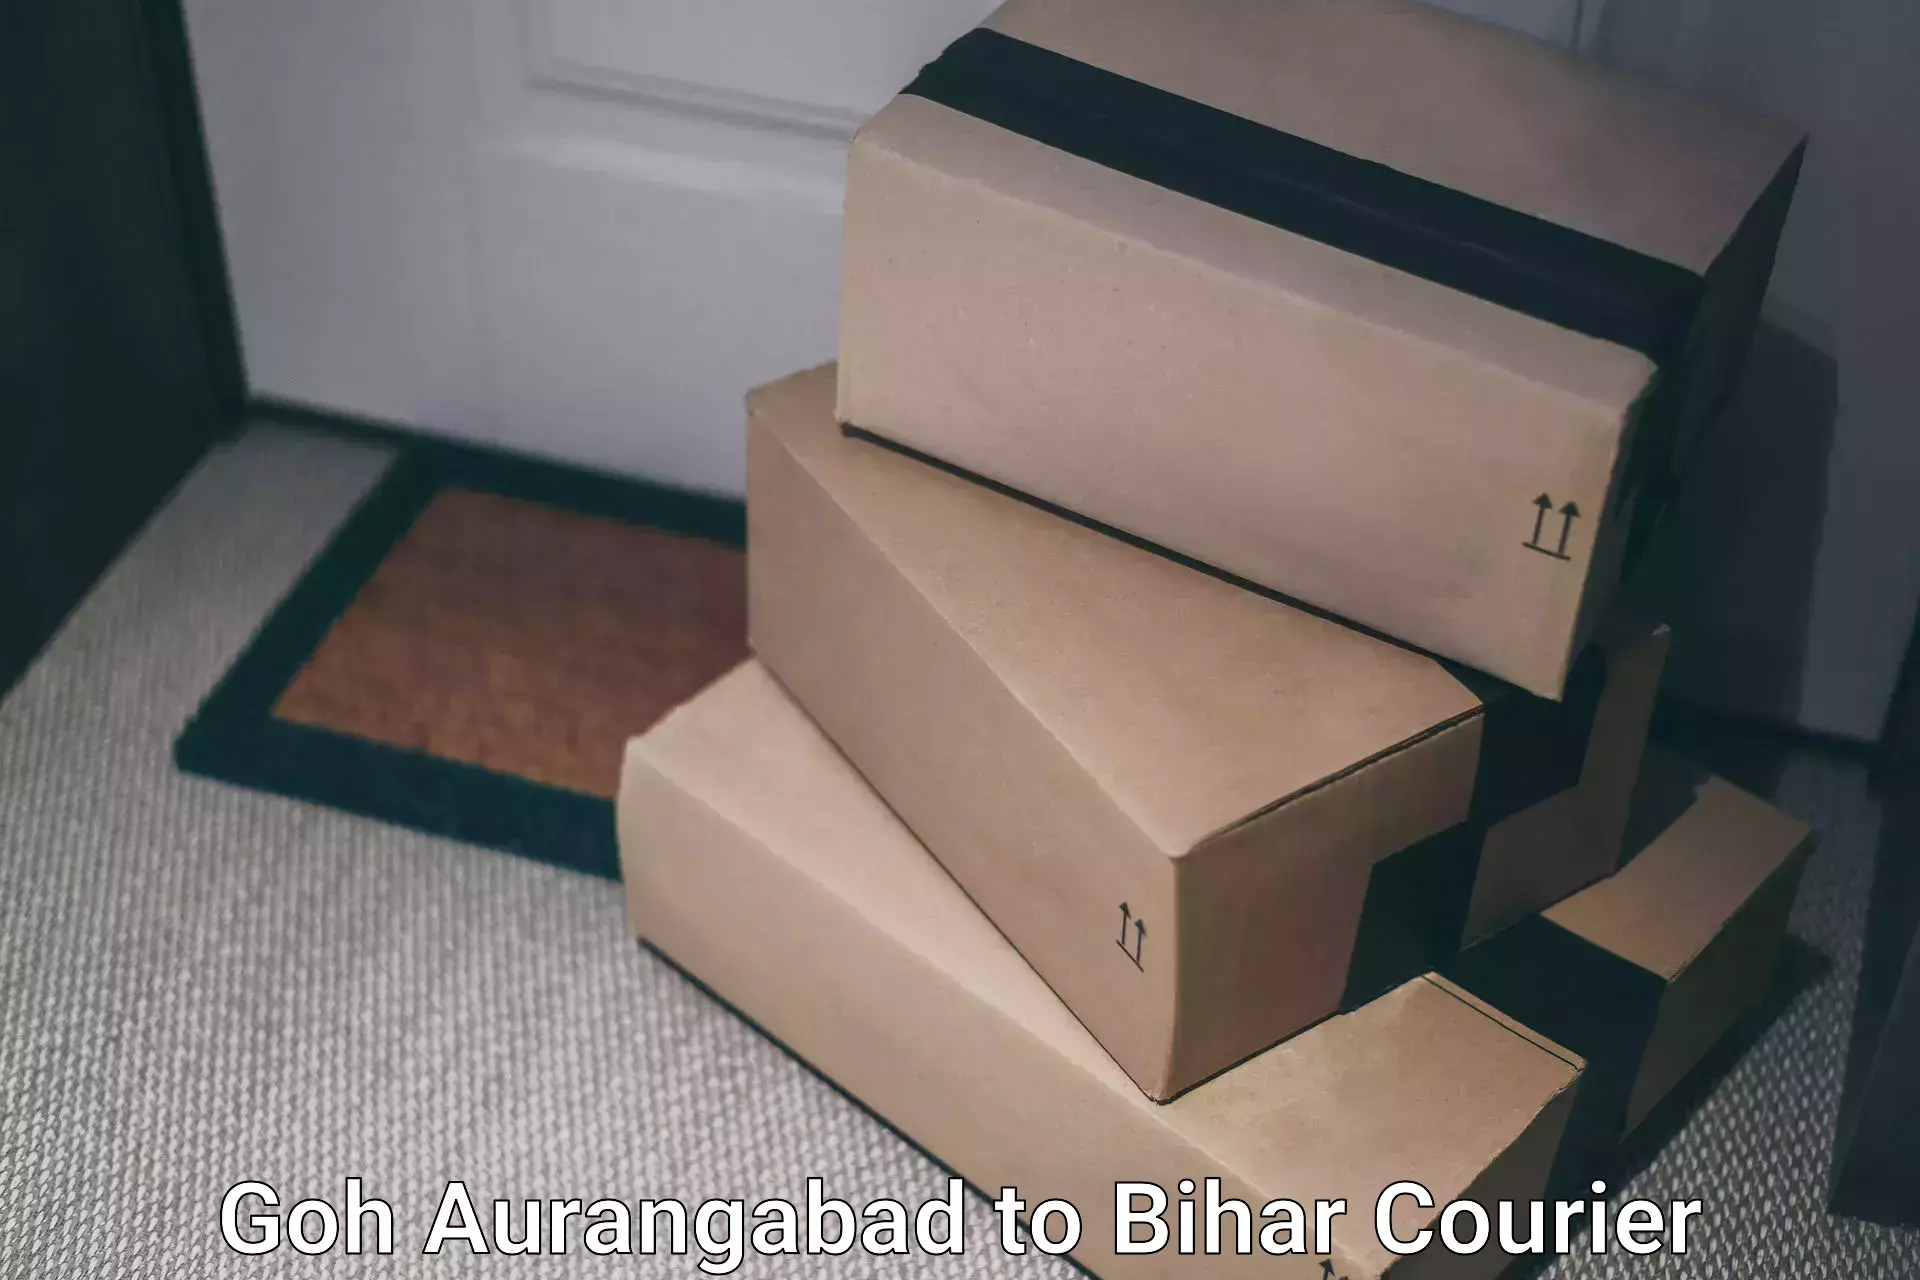 Cargo courier service Goh Aurangabad to Lakhisarai